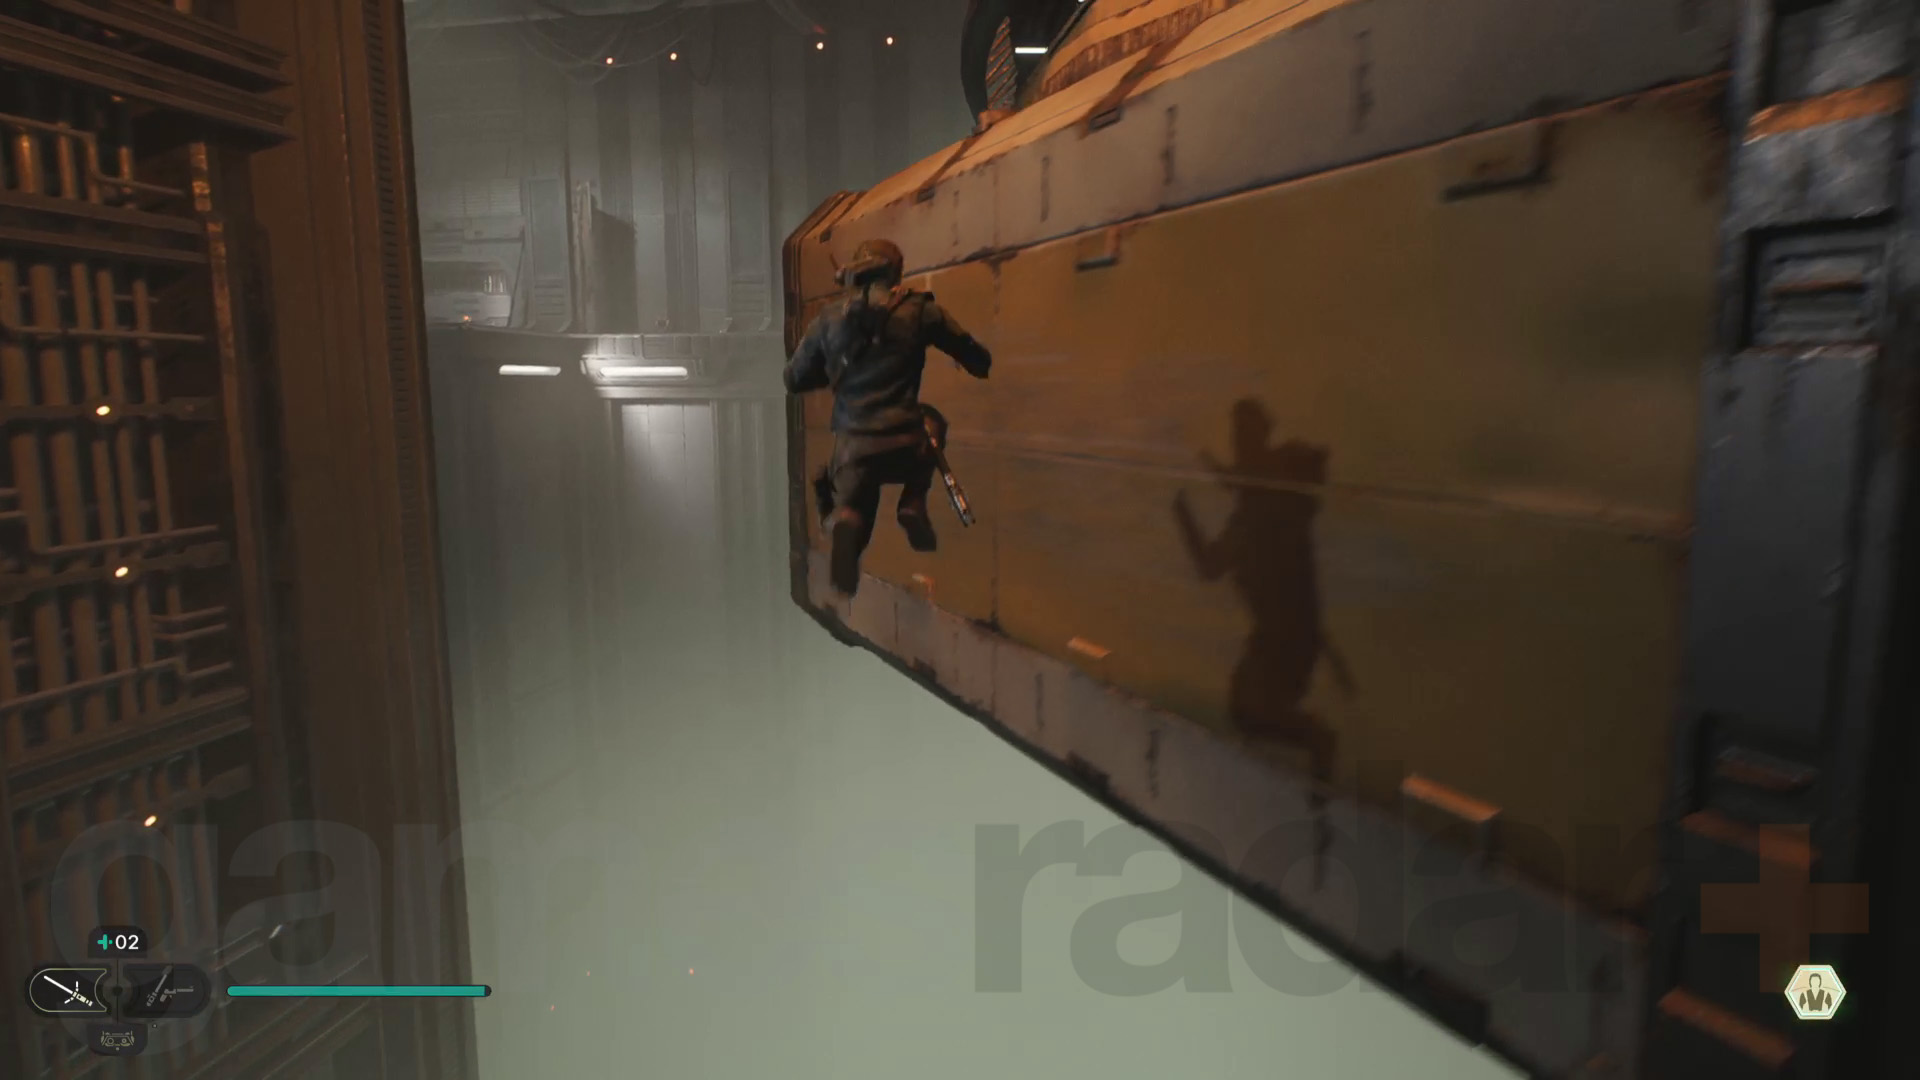 스타 워즈 제다이 서바이버 코보 루크레헐크 연습 트랙을 따라 움직이는 컨테이너를 따라 달리는 칼 벽